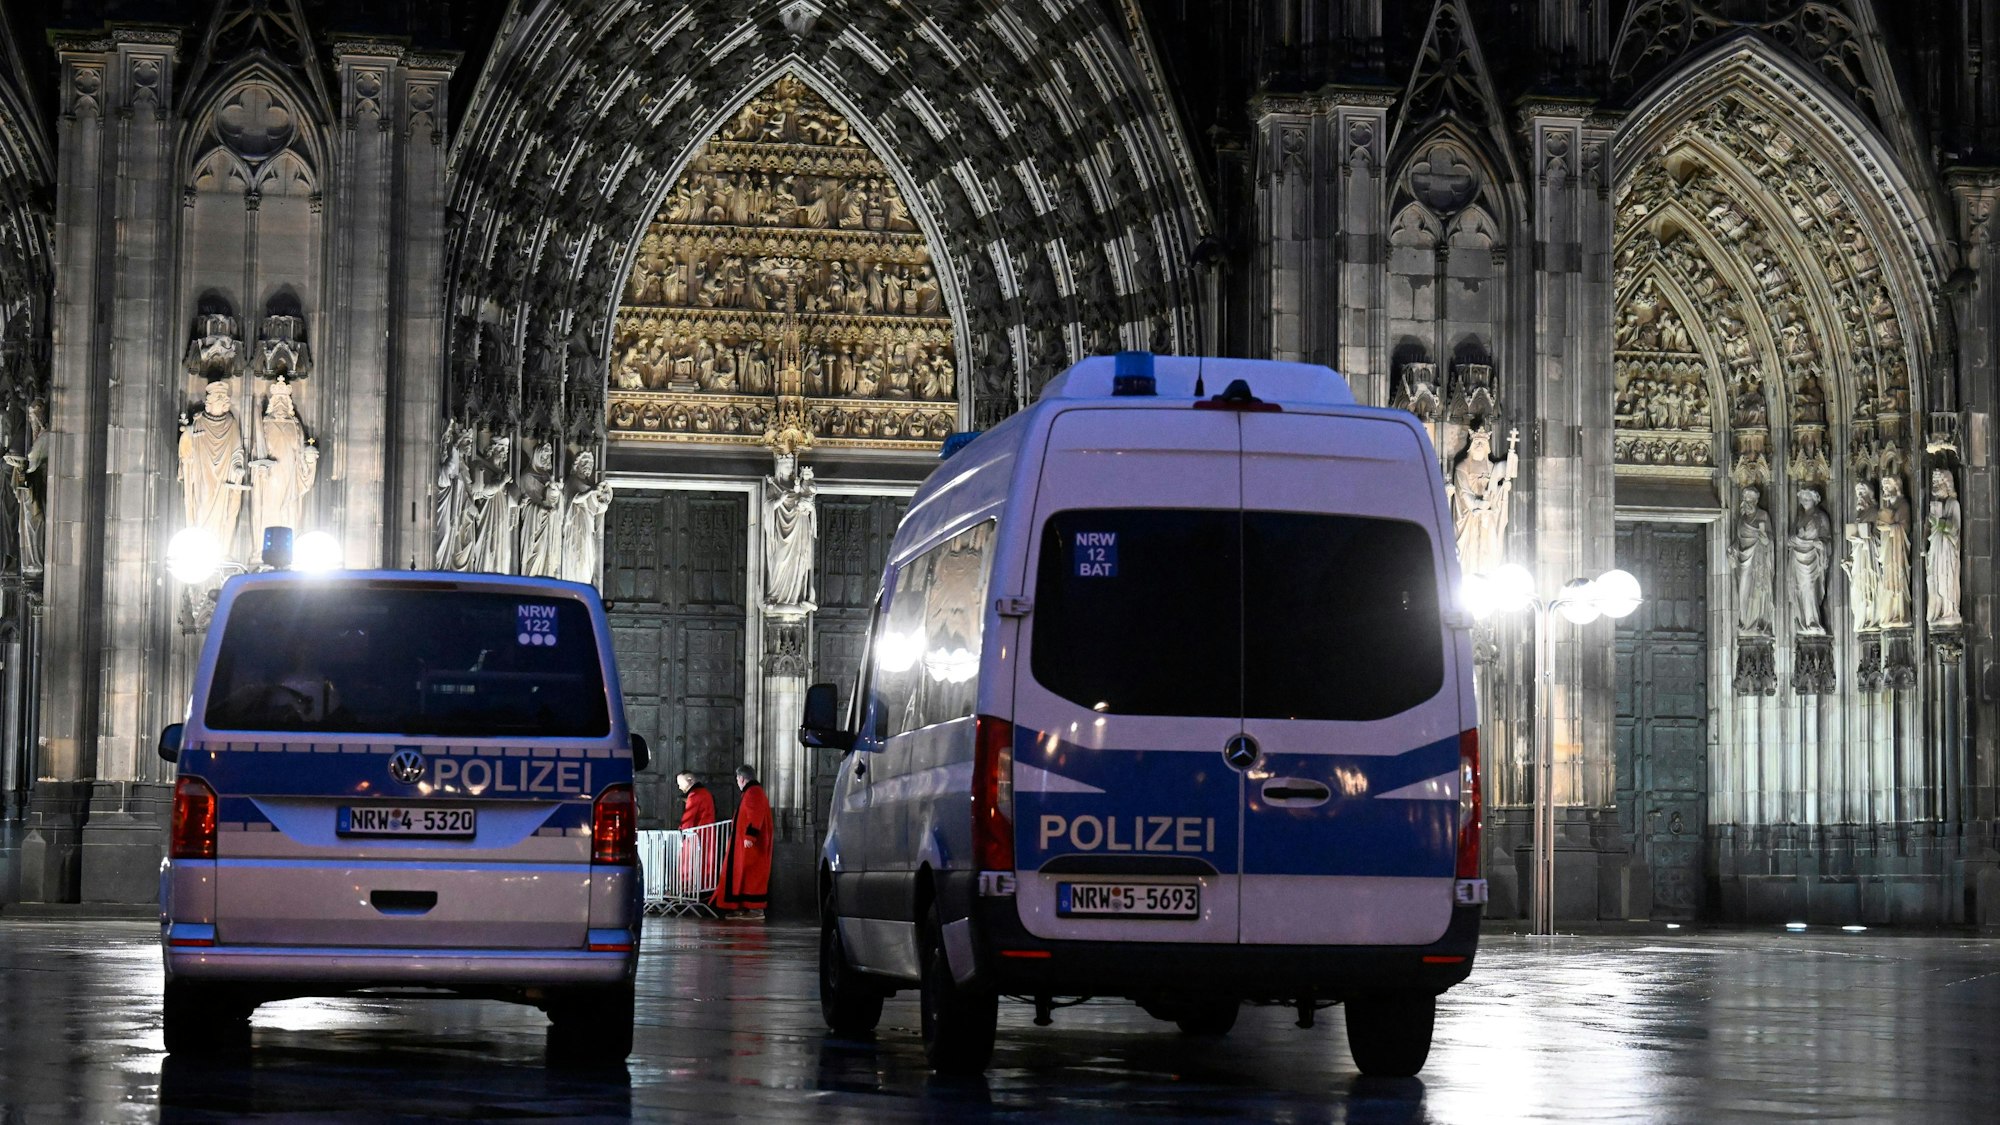 Polizisten sichern einen Eingang zum Kölner Dom. Aufgrund von Hinweisen auf einen geplanten islamistischen Anschlag hat die Polizei die Sicherheitsmassnahmen hochgefahren.